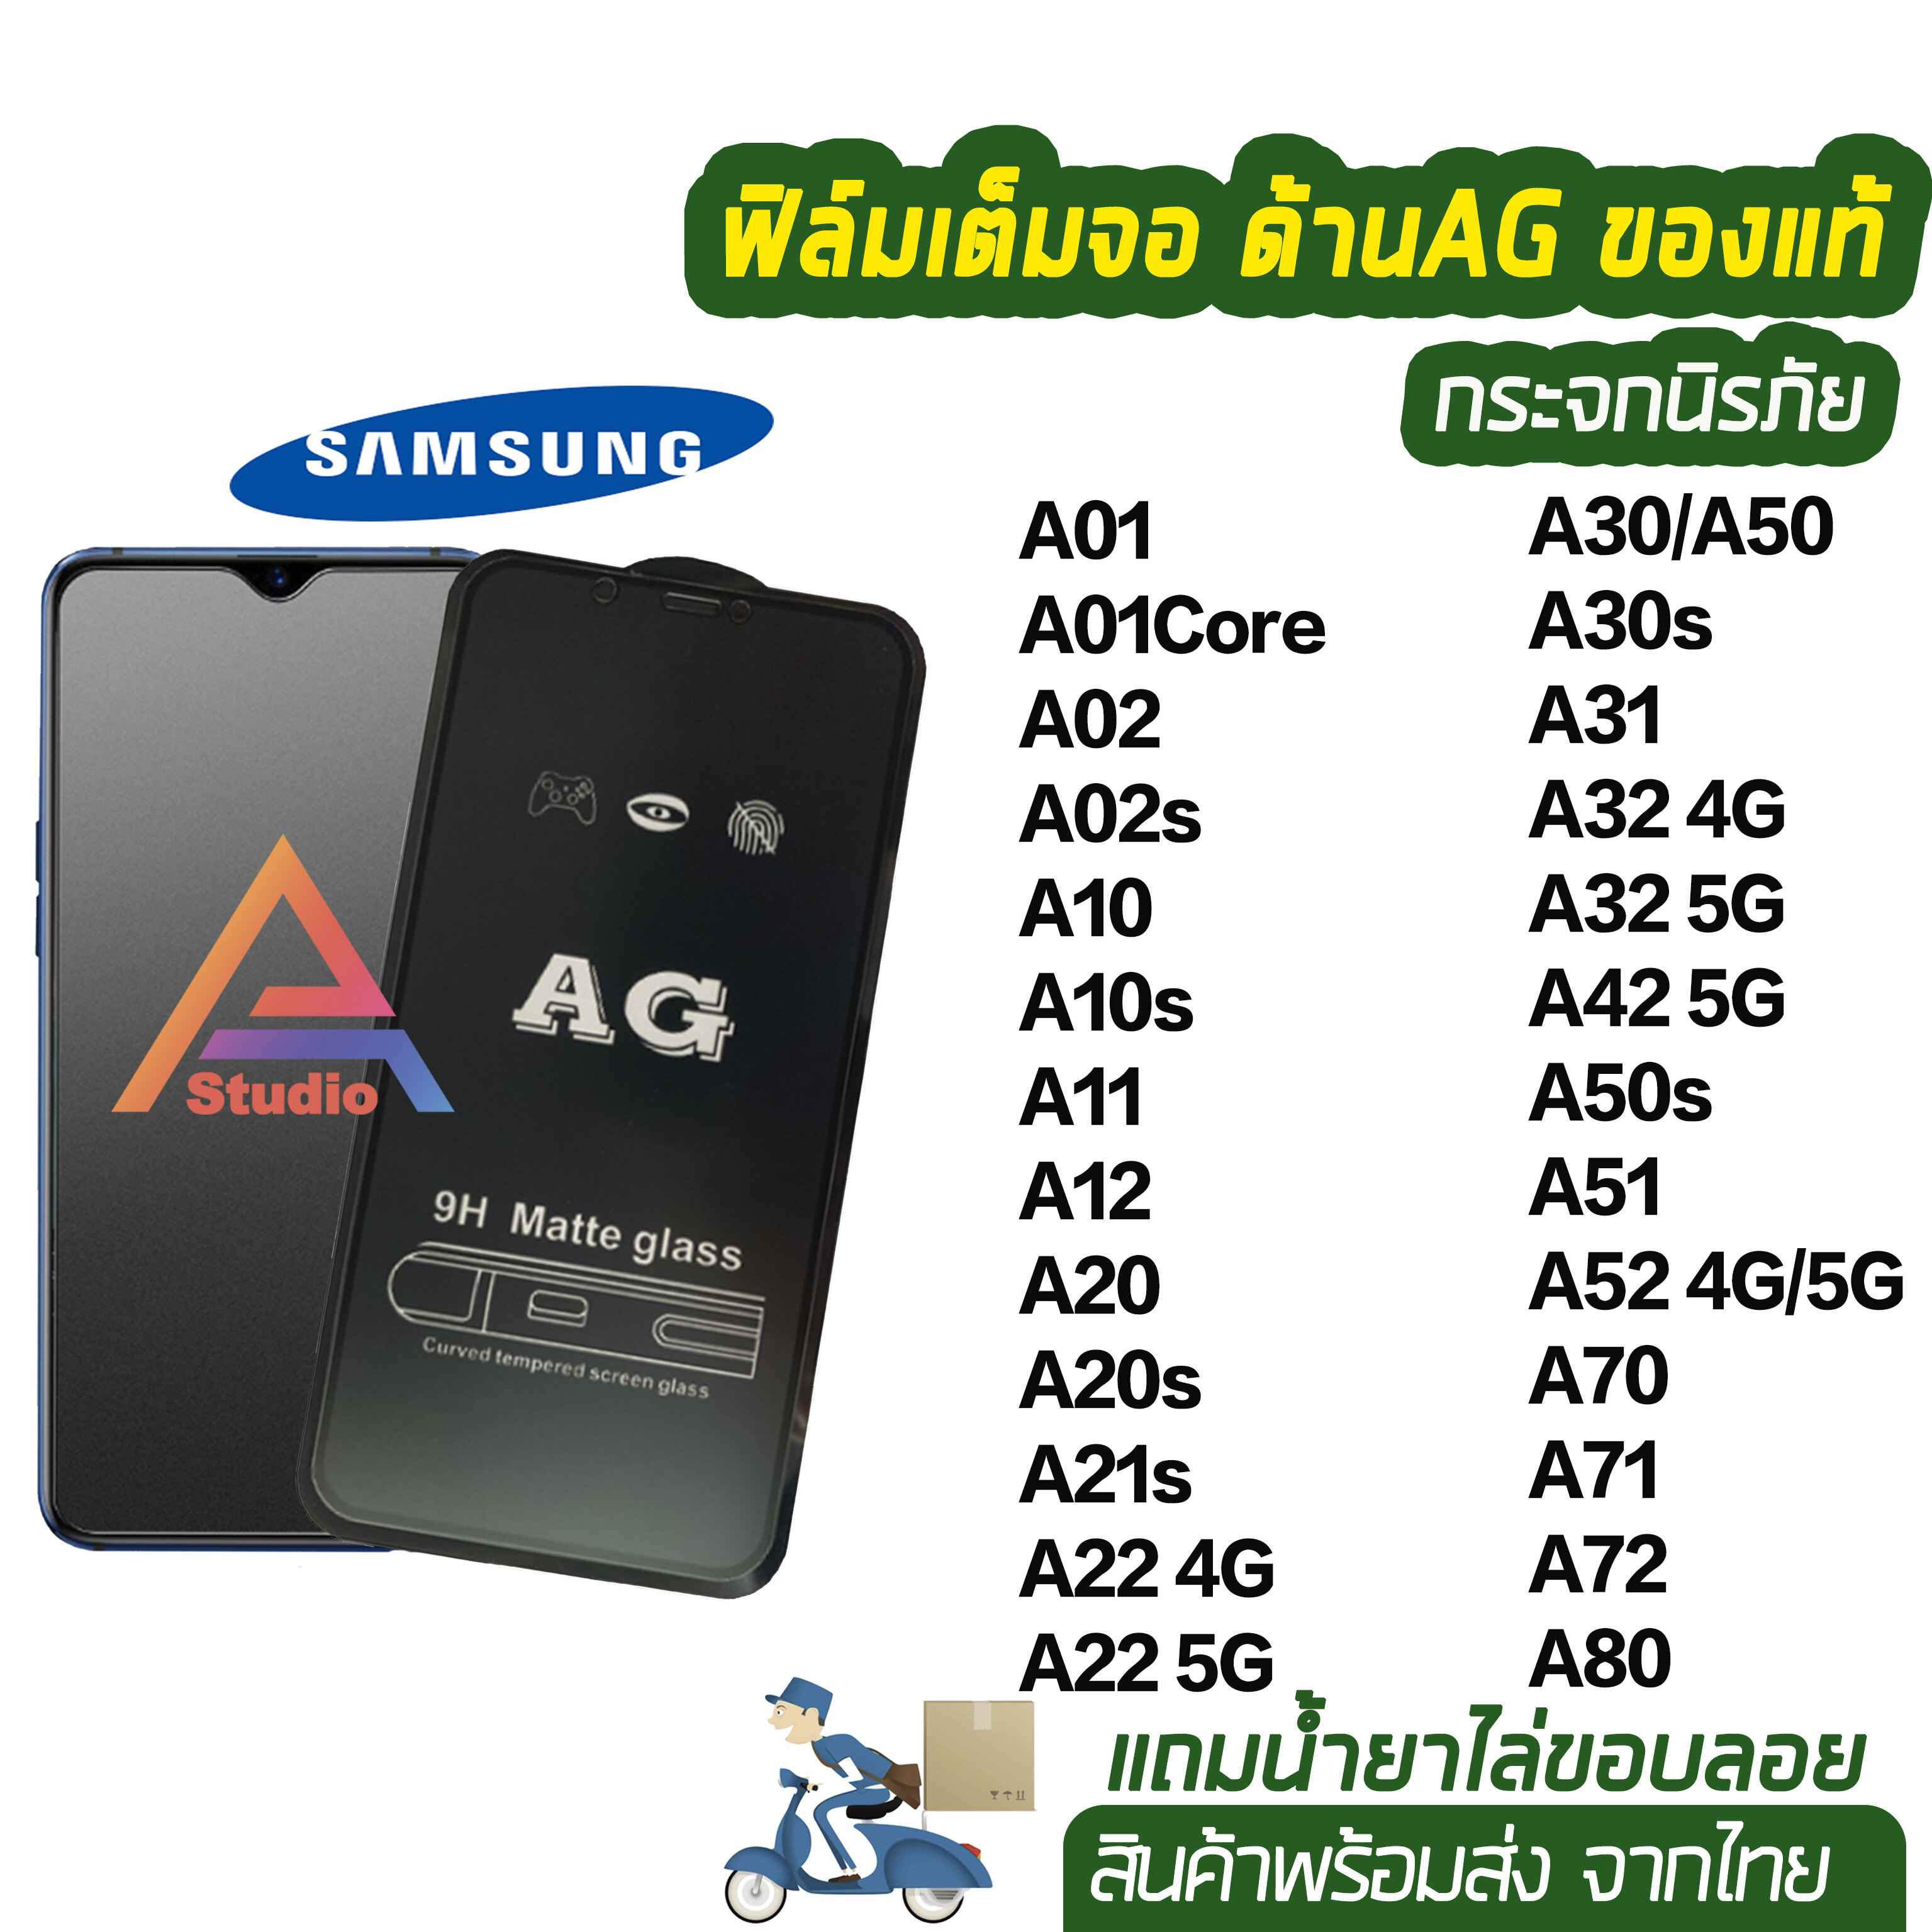 ฟิล์มกระจกเต็มจอ แบบด้าน AG ของรุ่น Samsung A01 A02 A02s A10 A10s A11 A12 A20s A21s A22 A30 A30s A31 A32 A42 A50 A50s A51 A52 A70 A71 A72 A80 ฟิล์มเต็มจอ ฟิล์มด้านsamsung ฟิล์มsamsung ฟิล์มag 9H